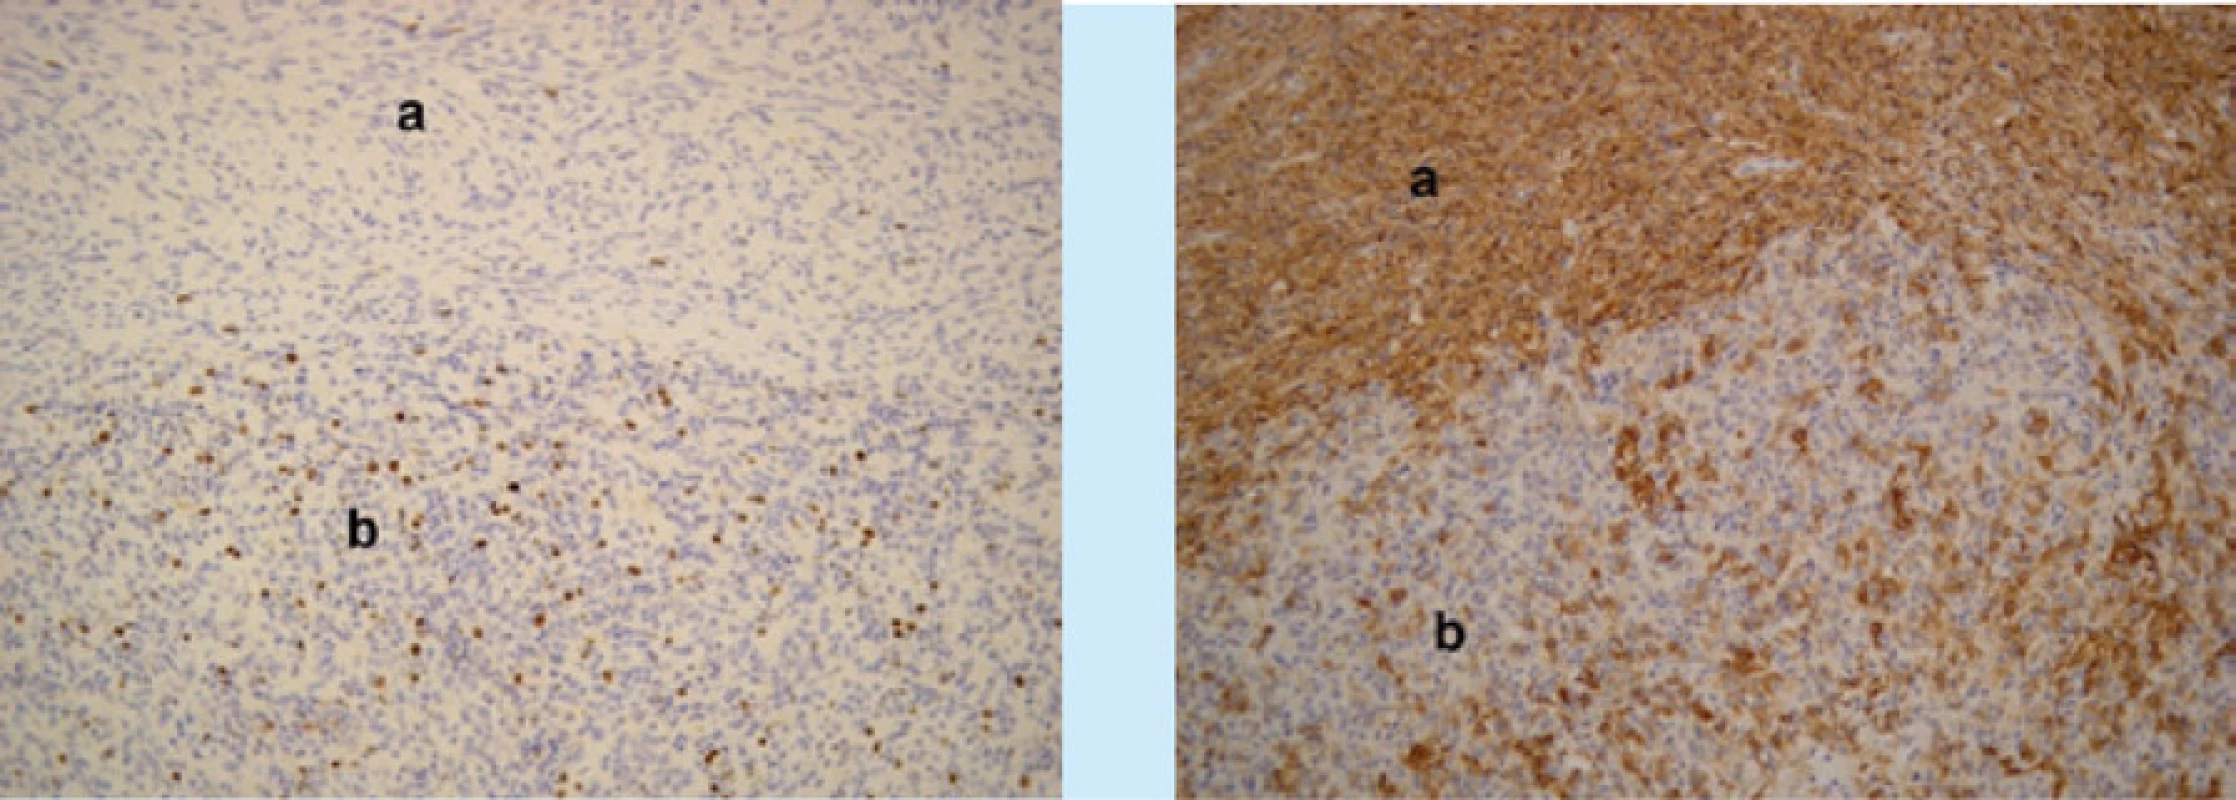 Mikroskopické obrazy stromálního tumoru nejistého maligního potenciálu (Stromal Tumor of Uncertain Malignant Potential, STUMP) včetně imunohistochemického hodnocení. Vlevo (zvětšení 40×, barvení hematoxylin-eozin)
lobulárně uspořádané nádorové ložisko (a), obdané silným vazivovým pouzdrem (b). Vpravo (zvětšení 200×, desmin)
pozitivní imunohistochemická reakce v obou typech nádorových elementů<br>
Fig. 3. Microscopic images of STUMP, including immunohistochemical evaluation. On the left (magnification 40 ×,
hematoxylin-eosin staining) lobularly arranged tumor foci (a), endowed with a strong fibrous sheath (b). On the right
(magnification 200 ×, desmin) positive immunohistochemical reaction in both types of tumor elements